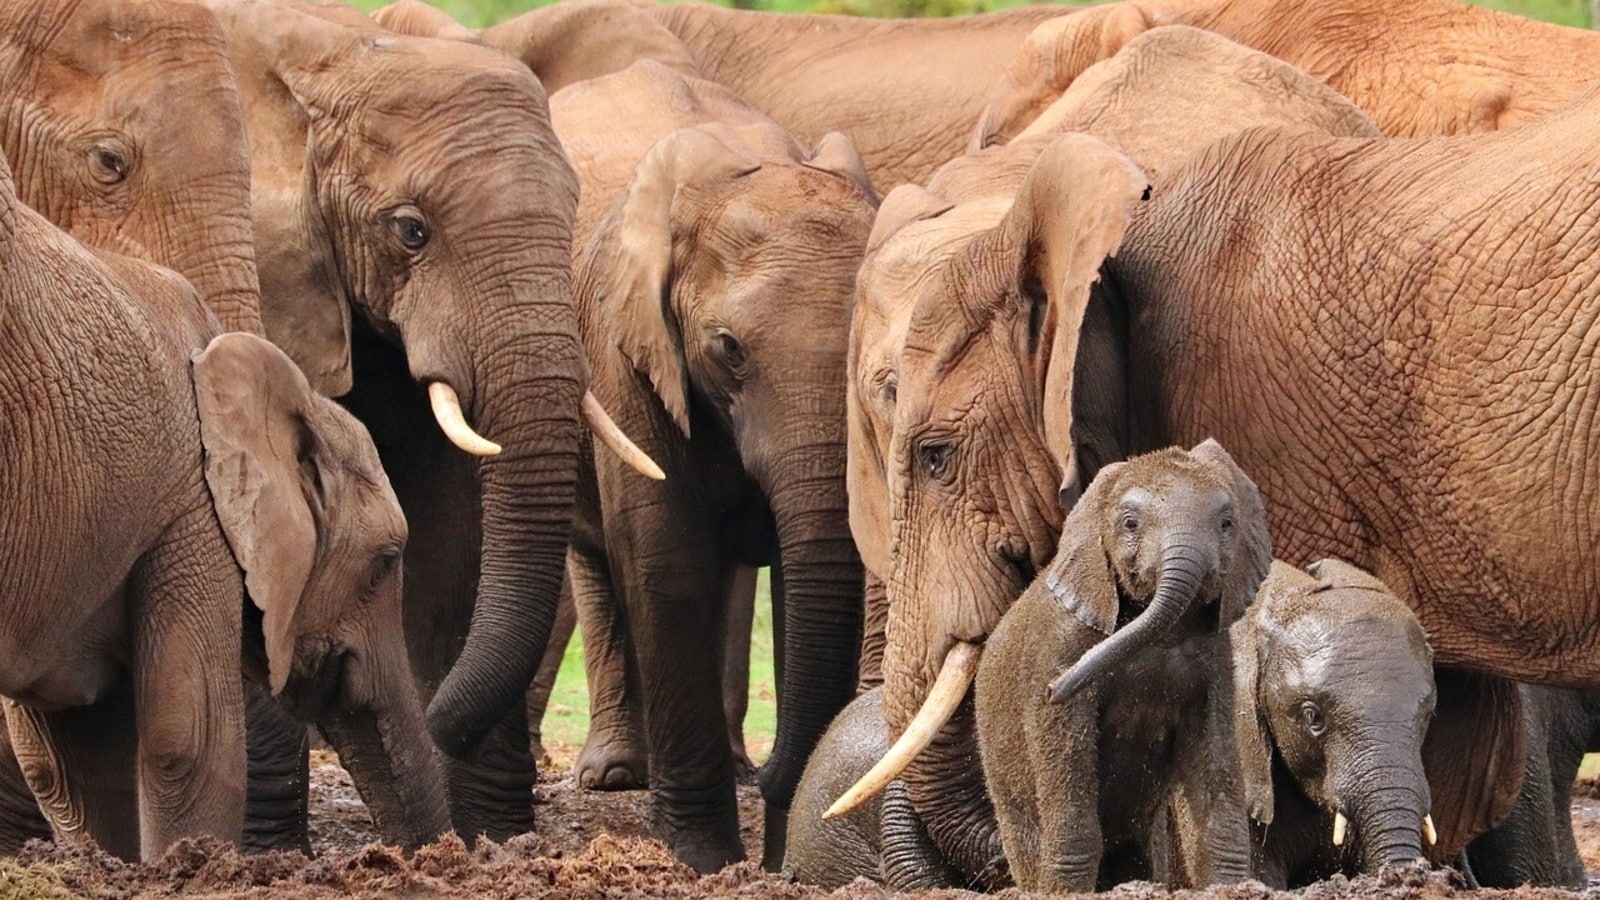 हाथी एक दूसरे से संवाद करने के लिए 'नामों' का उपयोग करते हैं: अध्ययन